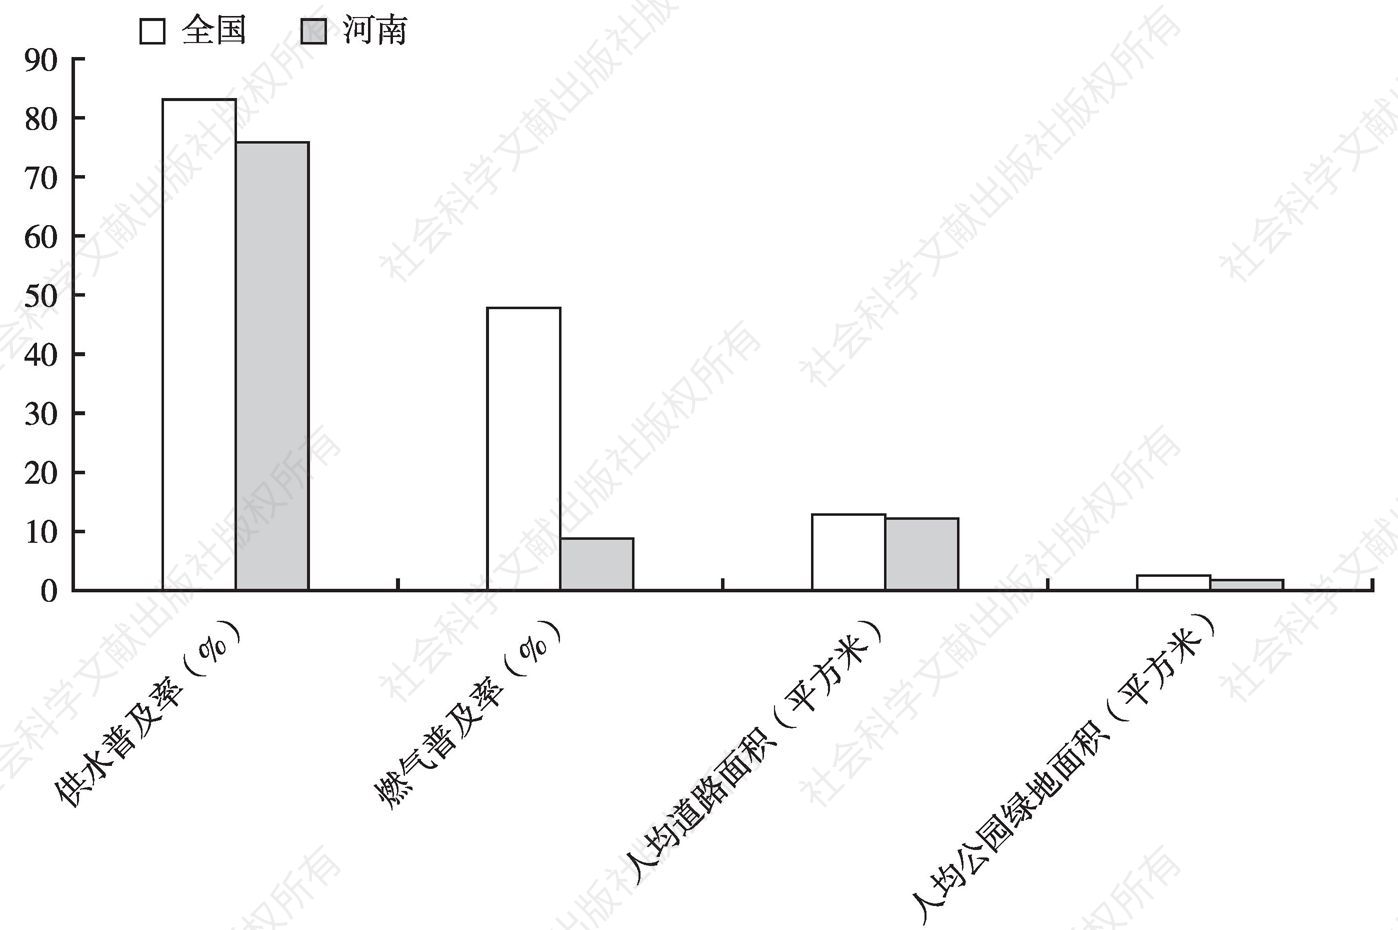 图3 2014年河南建制镇设施水平与全国的比较